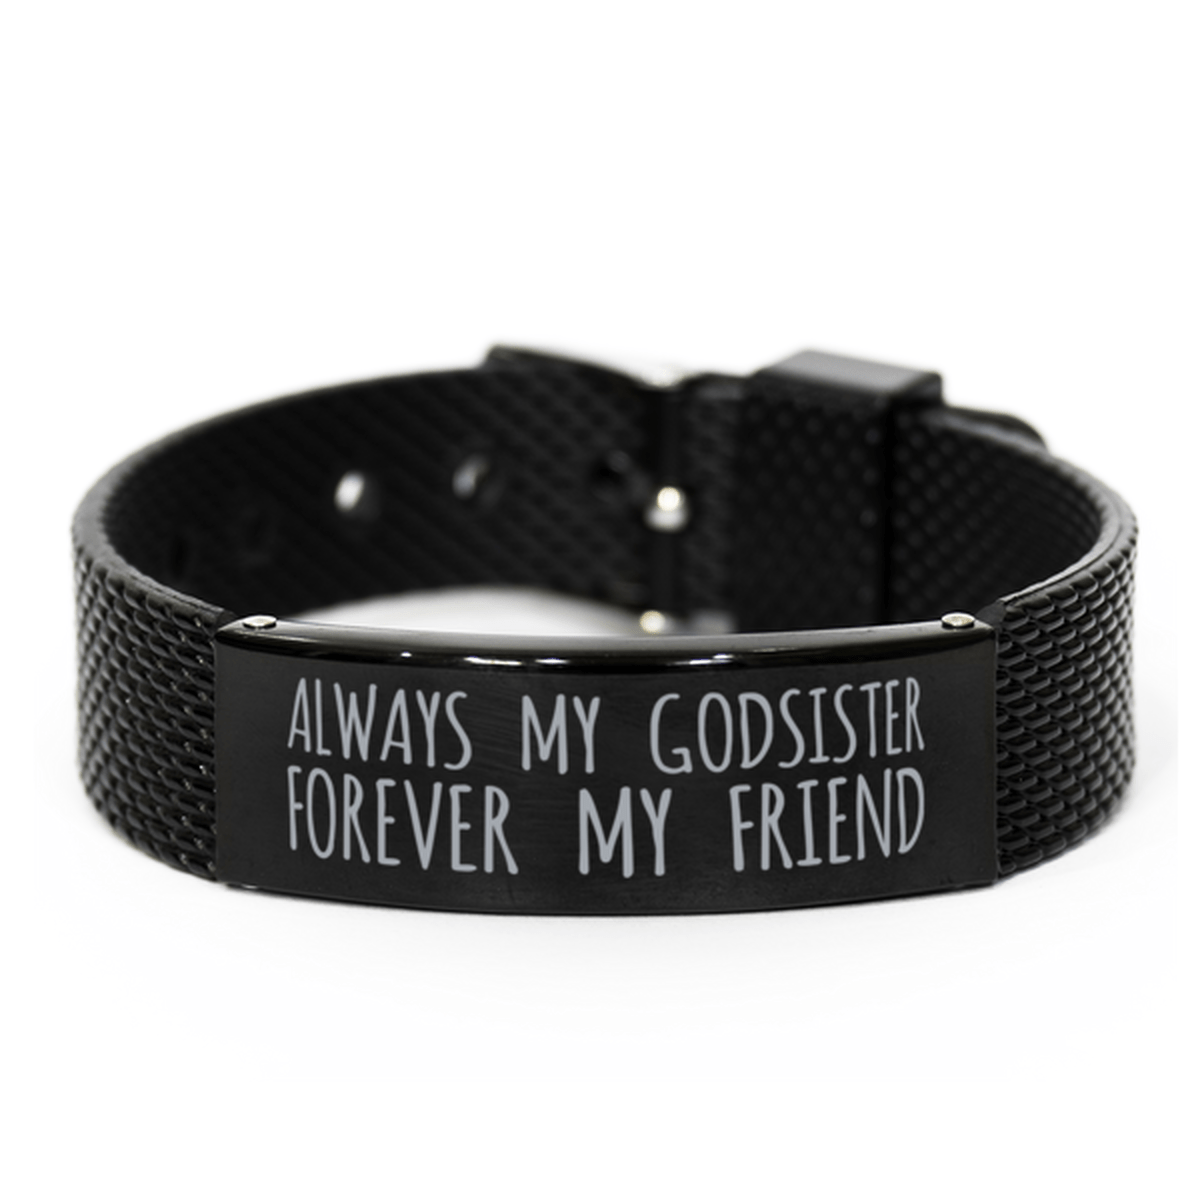 Inspirational Godsister Black Shark Mesh Bracelet, Always My Godsister Forever My Friend, Best Birthday Gifts for Family Friends